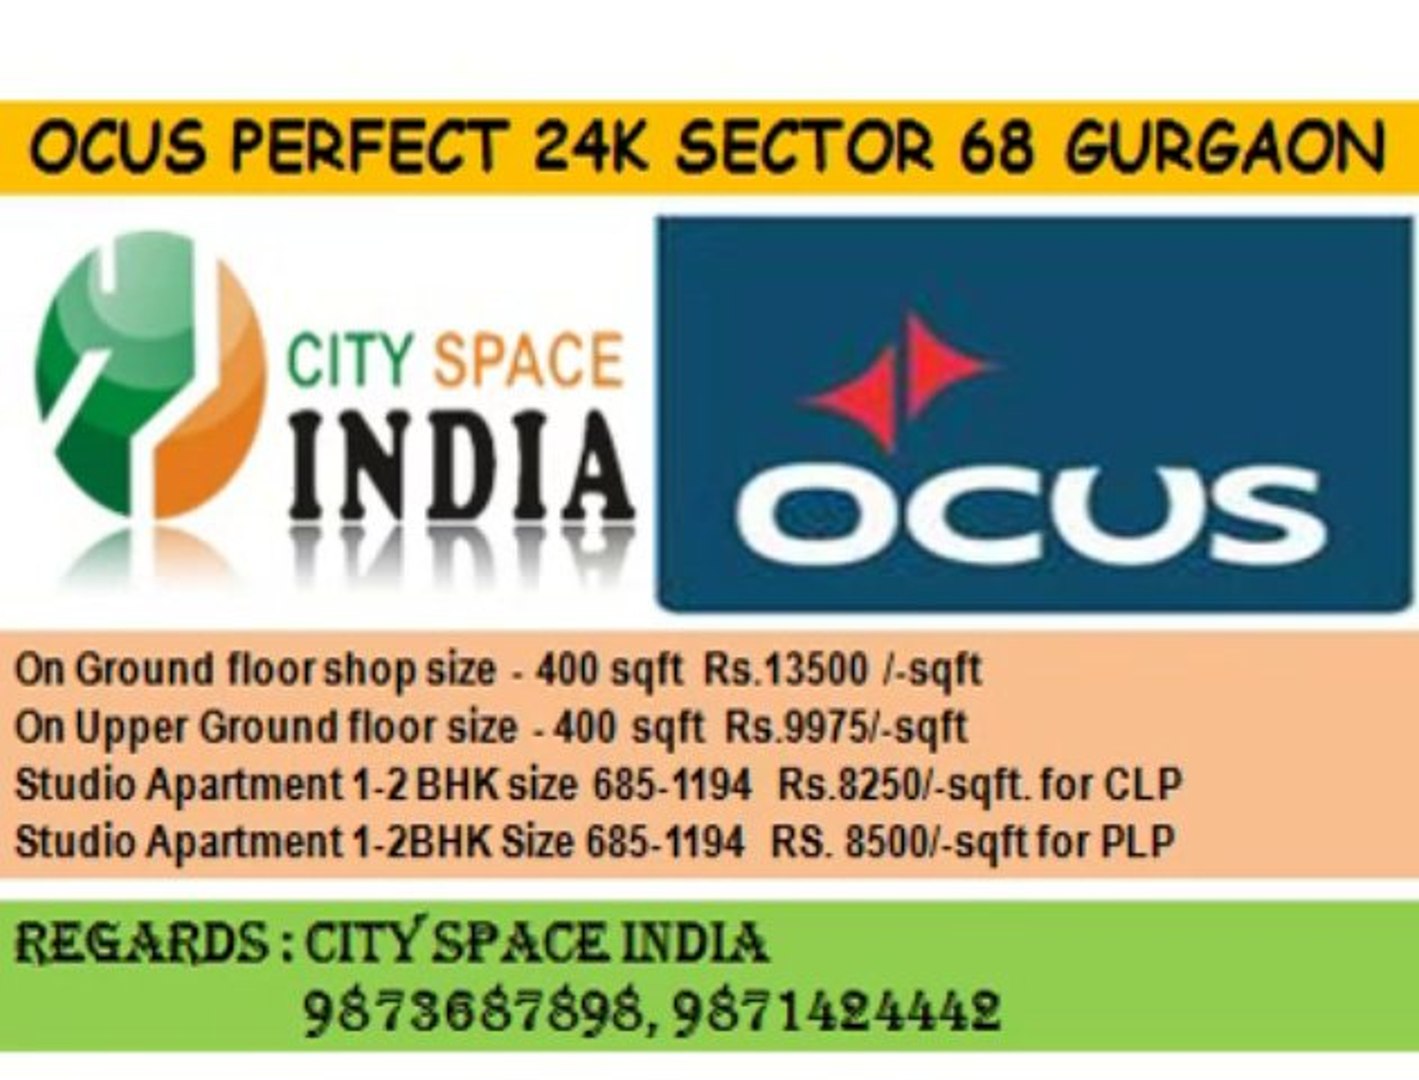 ⁣Ocus perfect 24k studio apartment@685 sqft.@8500 for PLP plan gurgaon